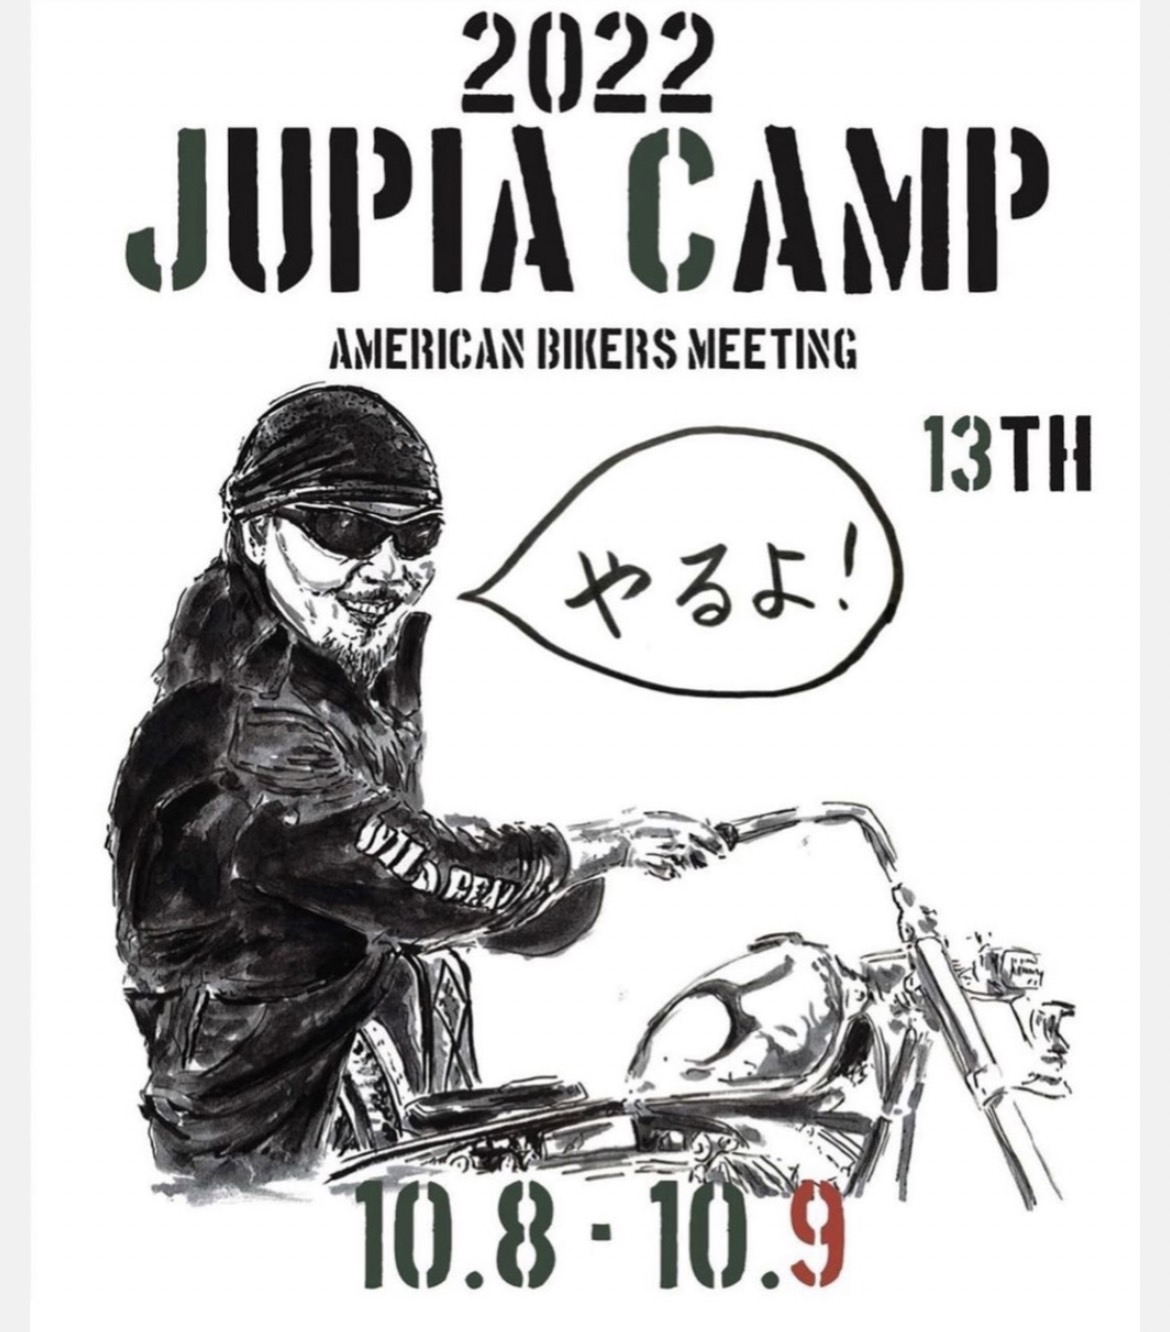 2022 JUPIA CAMP